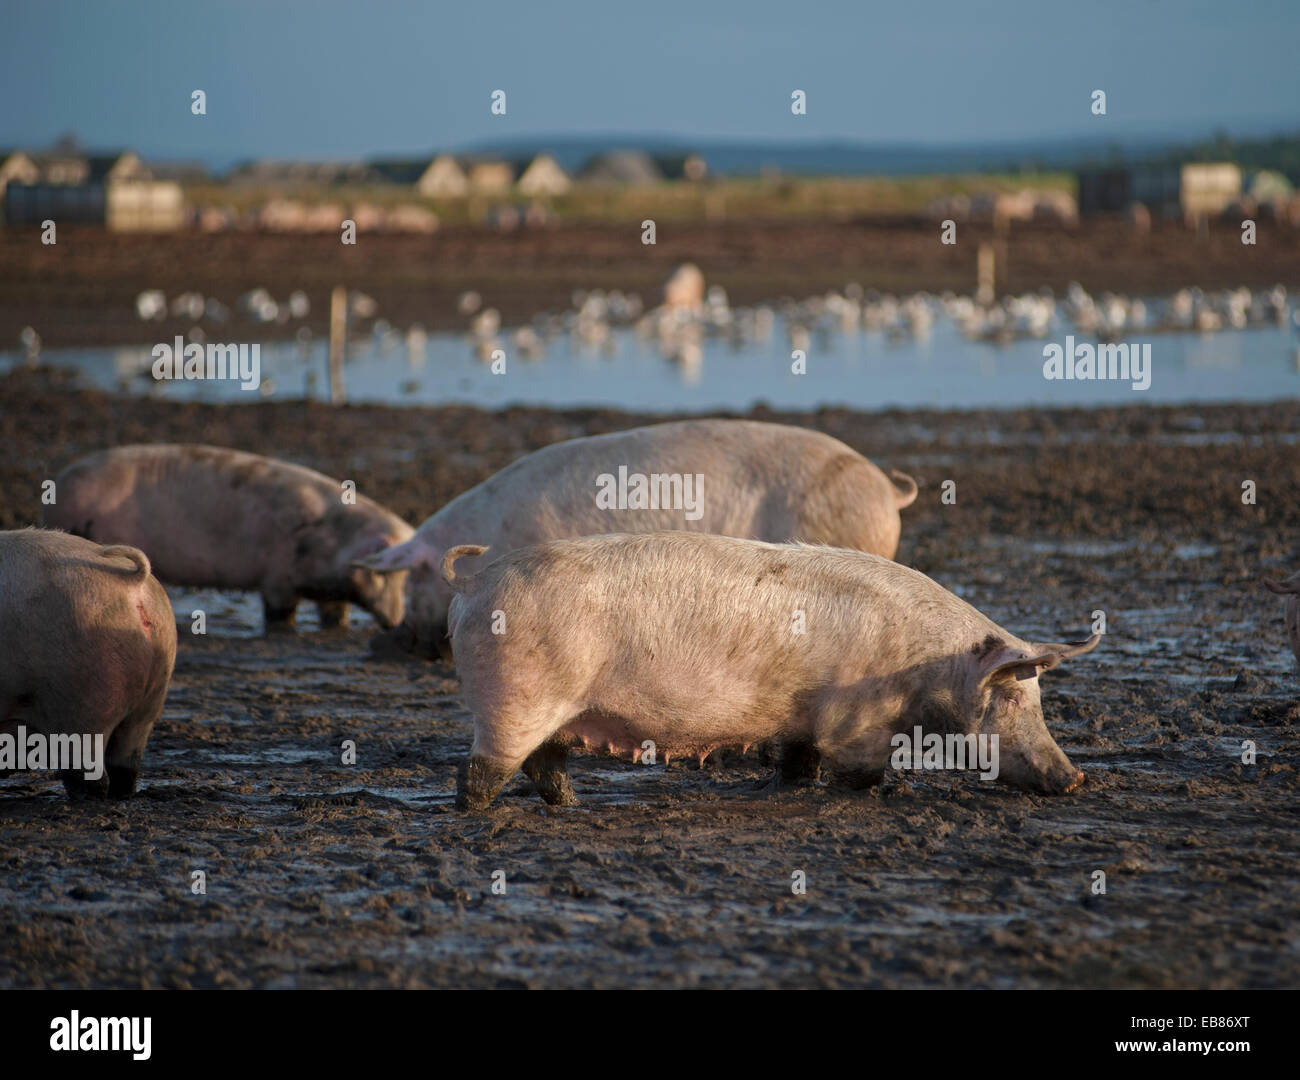 Intervalo libre de la industria de la cría de cerdos animales ir de forraje en un terreno fangoso, en Lossiemouth, Moray. Escocia. Ocs 9231. Foto de stock